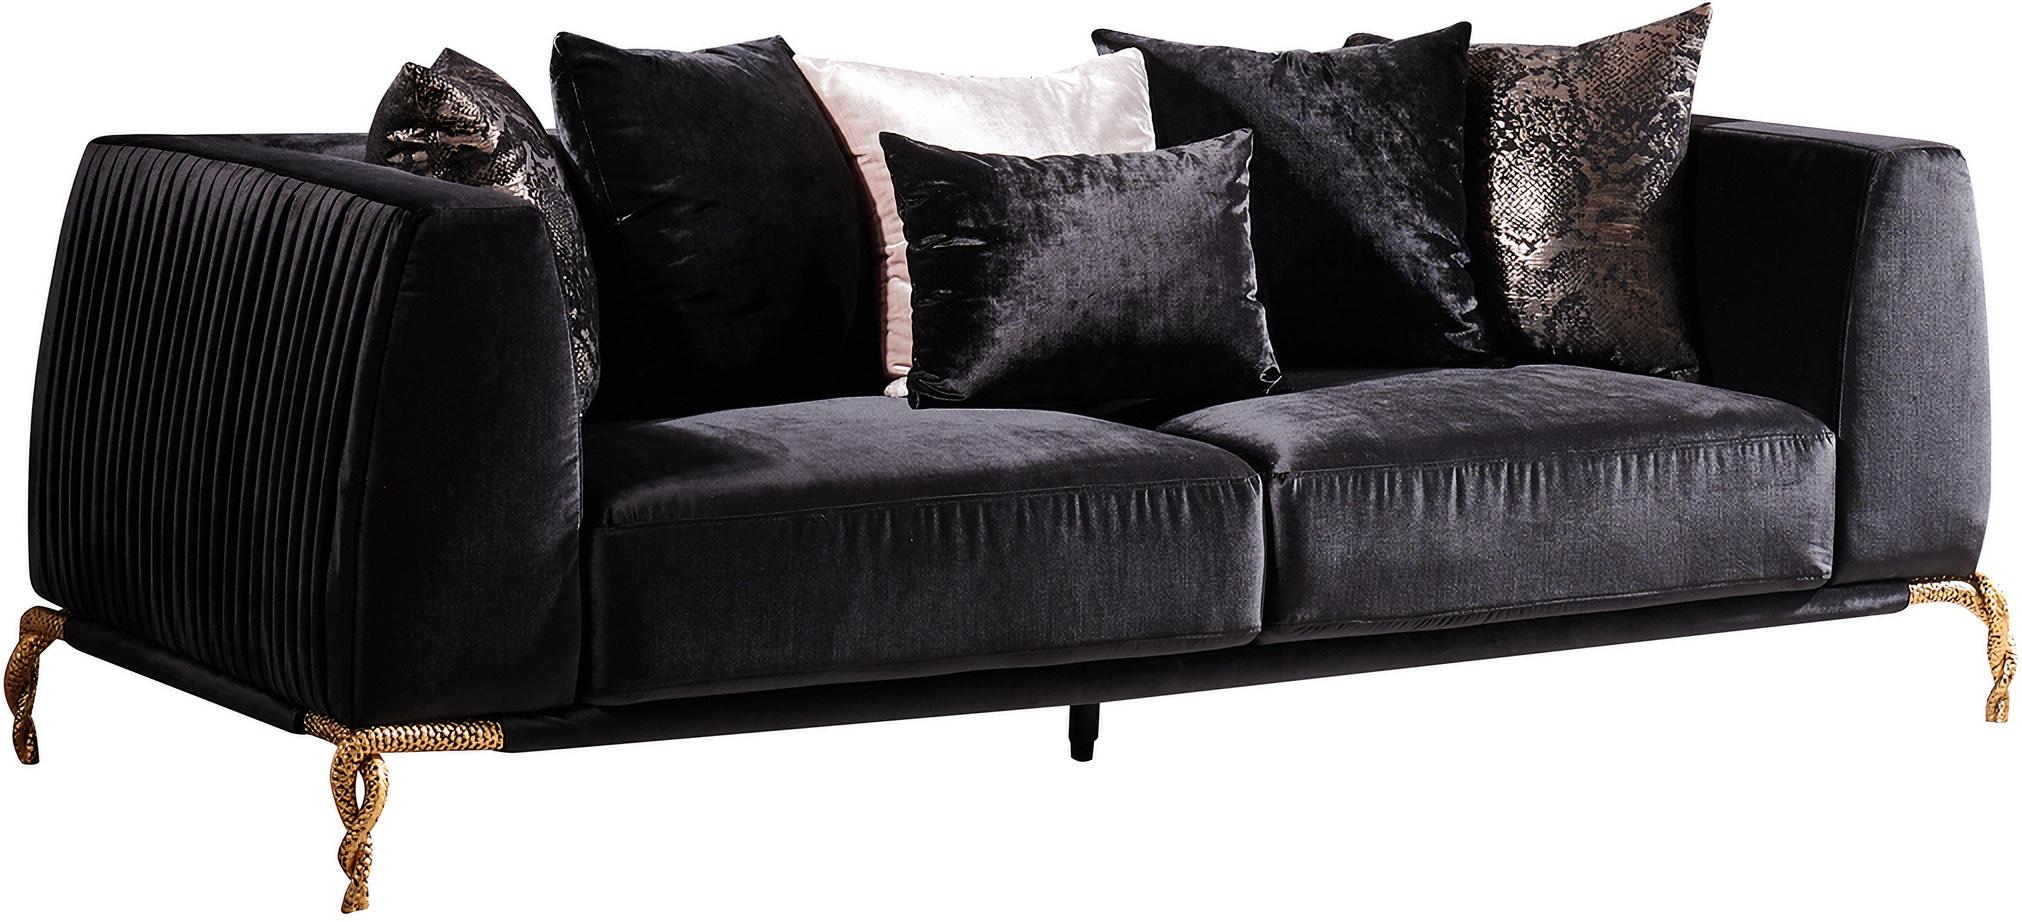 Contemporary, Modern Sofa Majestic 601955550239 in Black Velvet